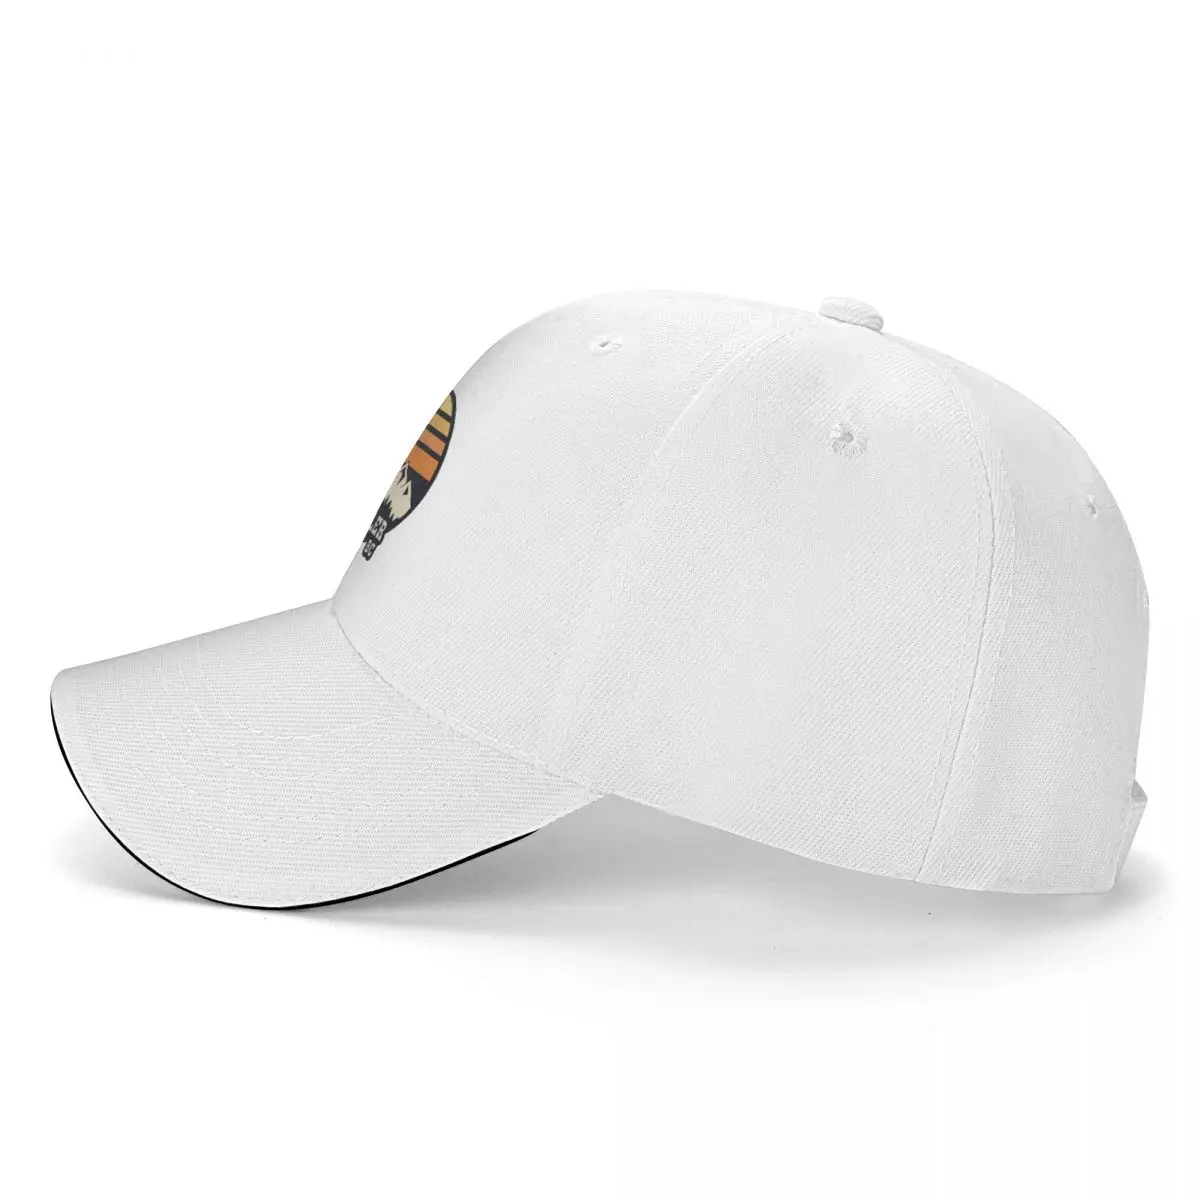 כובע בייסבול עבור גברים, נשים, כלי הלהקה וויסלר בציר שמש כובע הצמד חזרה כובע אלגנטי כובעים - 2